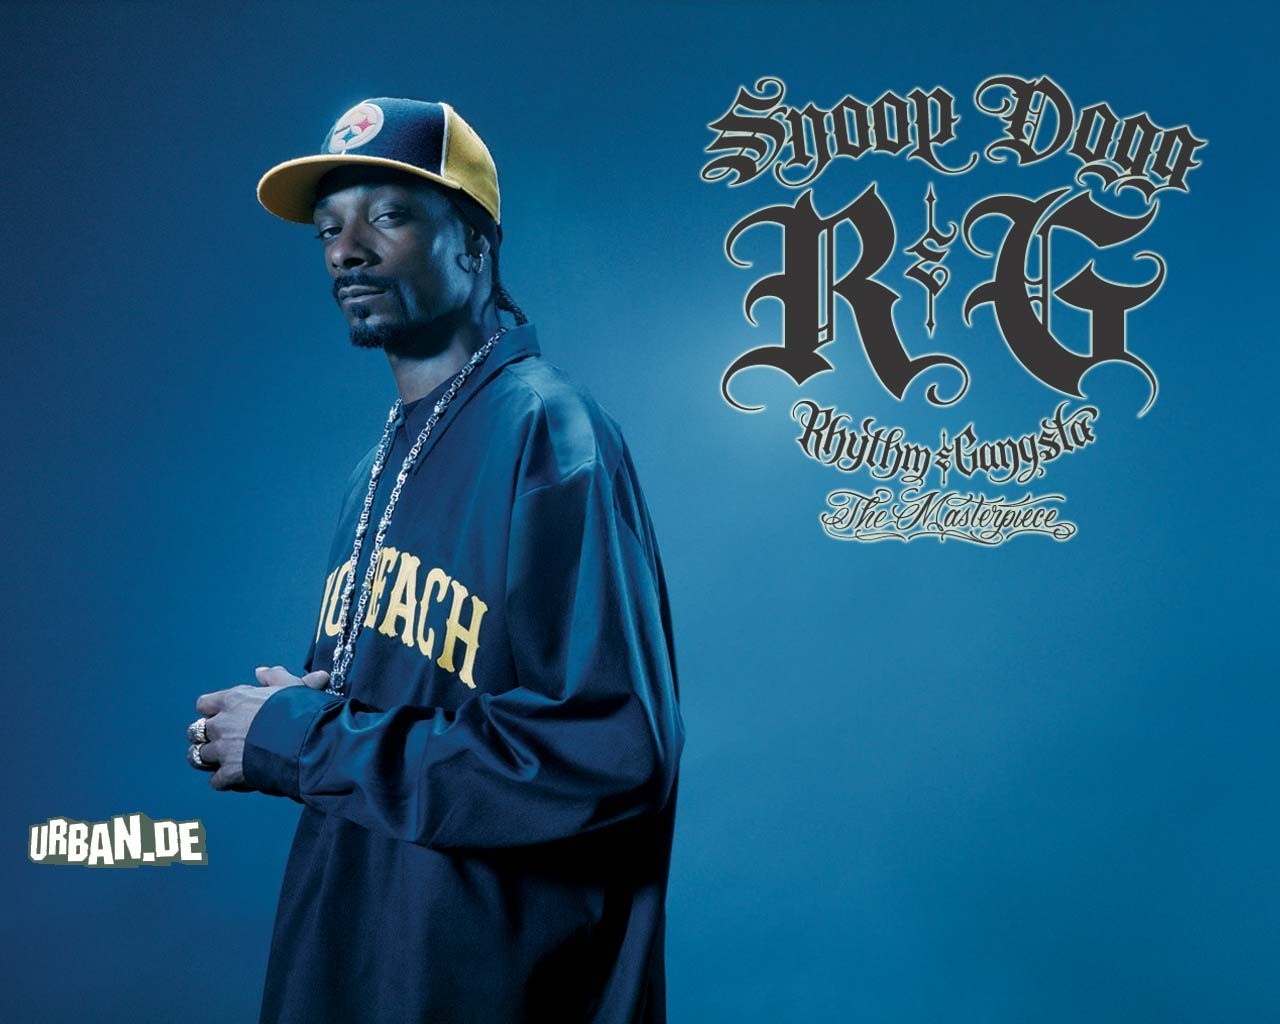 File Snoop Dogg Wallpaper 6i49vqp Jpg 4usky